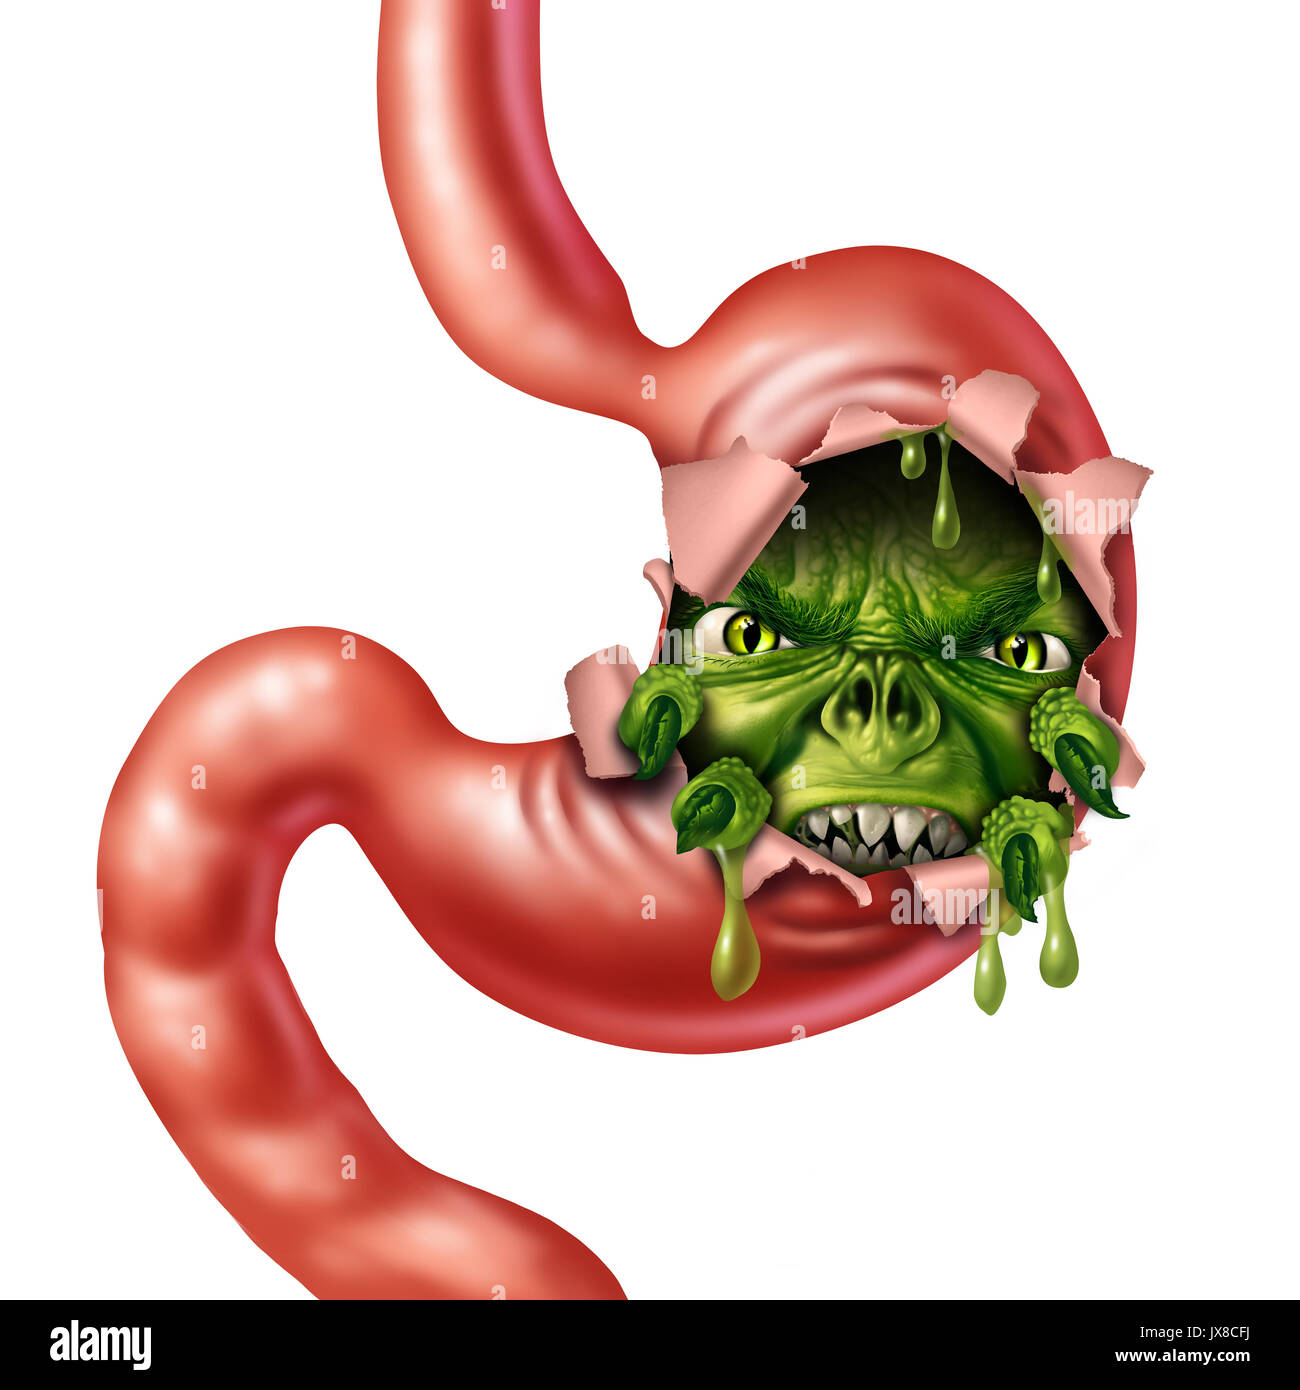 Magenschmerzen und Übelkeit Krankheit als wütende Digestive organ Charakter als medizinische Metapher für Verdauungsbeschwerden und Bauch schmerzen Magen mit Flüssigkeit. Stockfoto